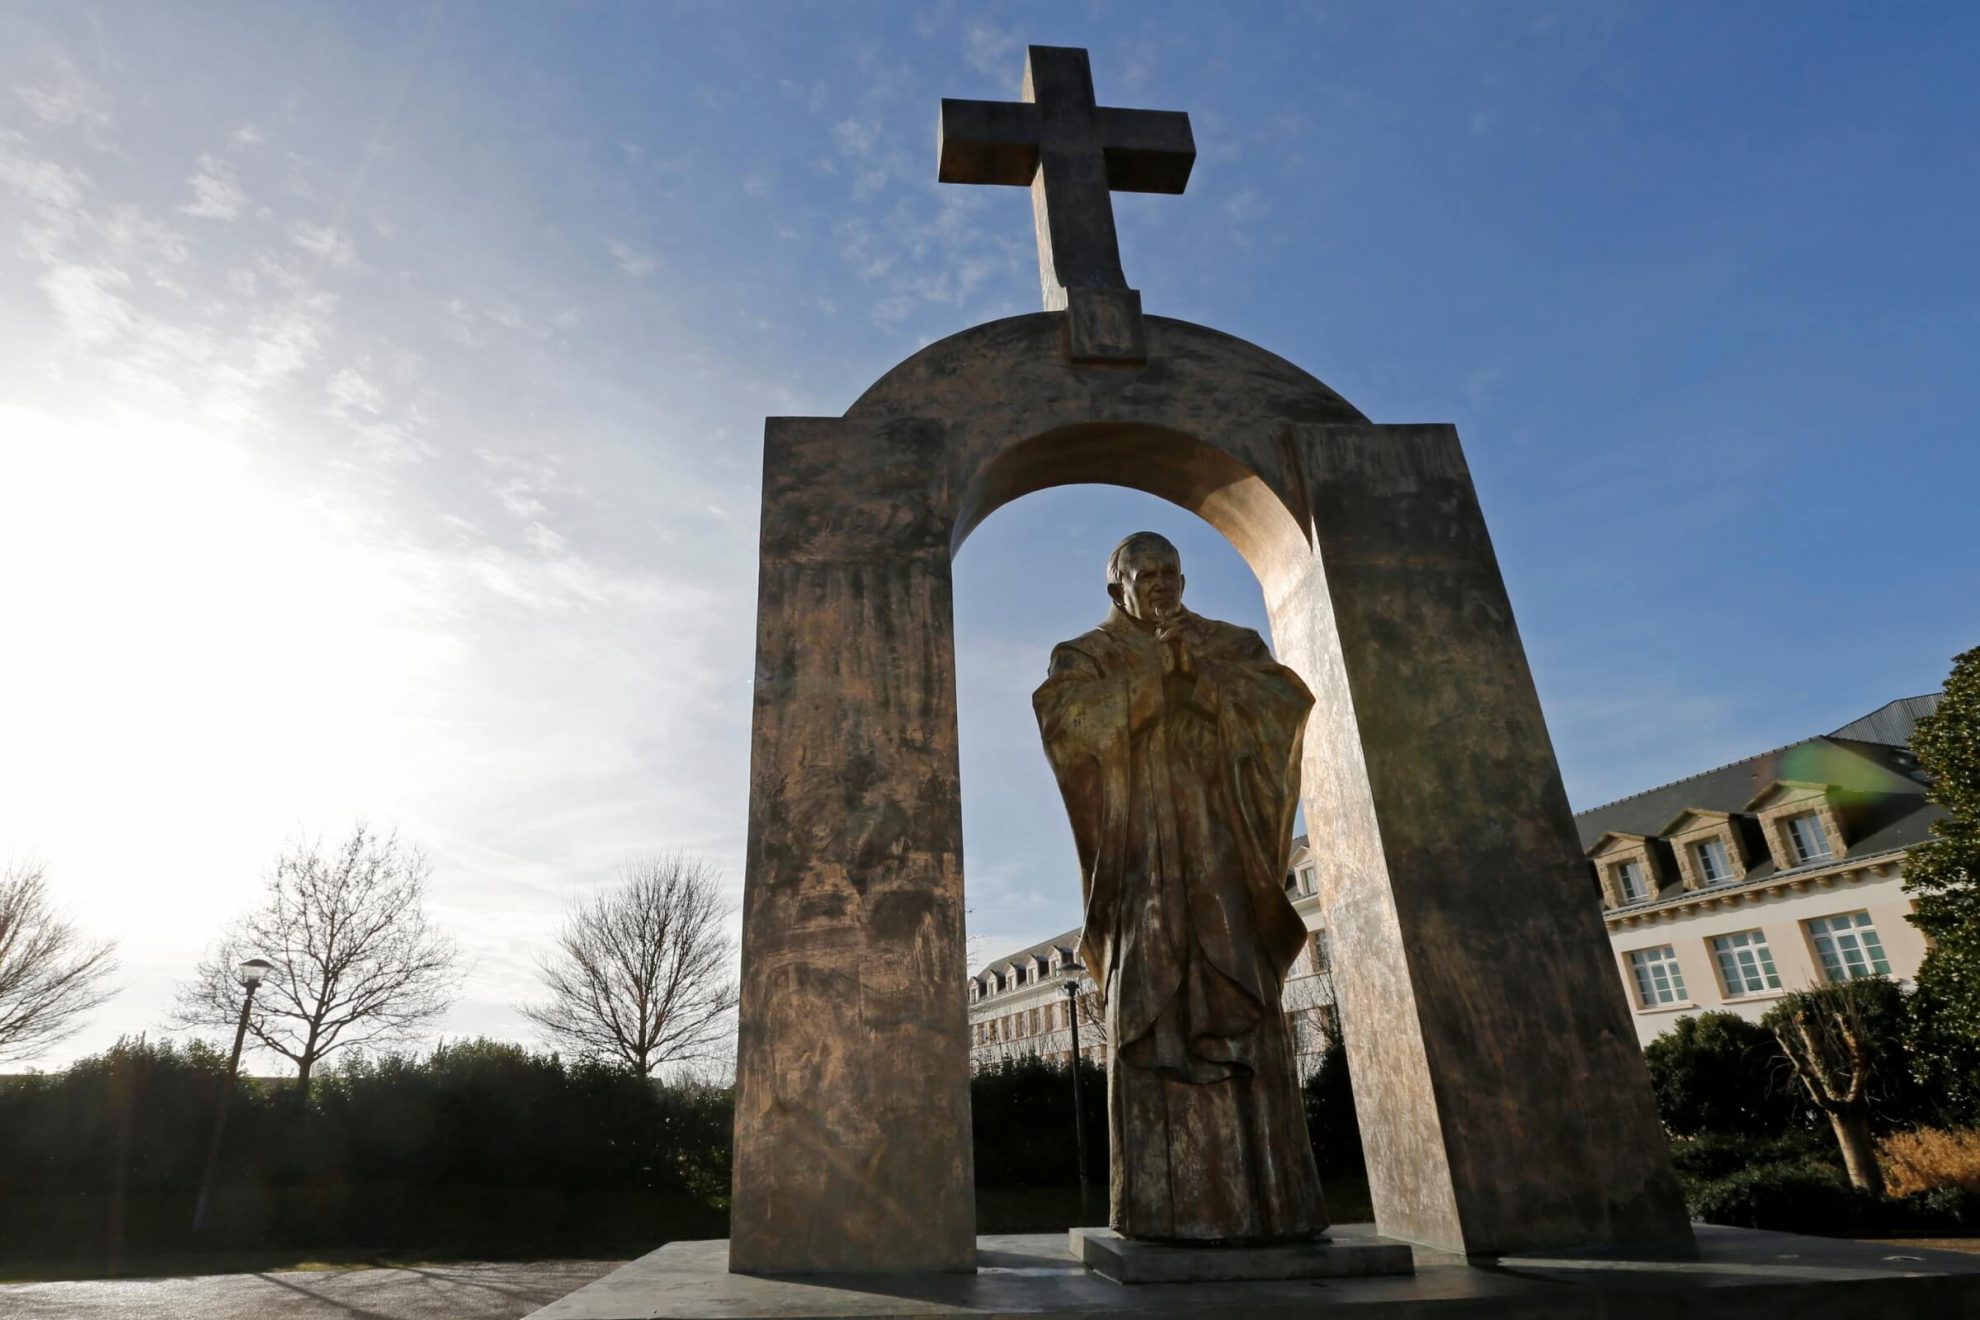 Praėjusią savaitę Prancūzijos aukščiausiasis administracinis teismas nusprendė jog ant Bretanėje, vakarų Prancūzijoje stovinčios popiežiaus Jono Pauliaus II skulptūros esantis kryžius turi būti pašalintas.